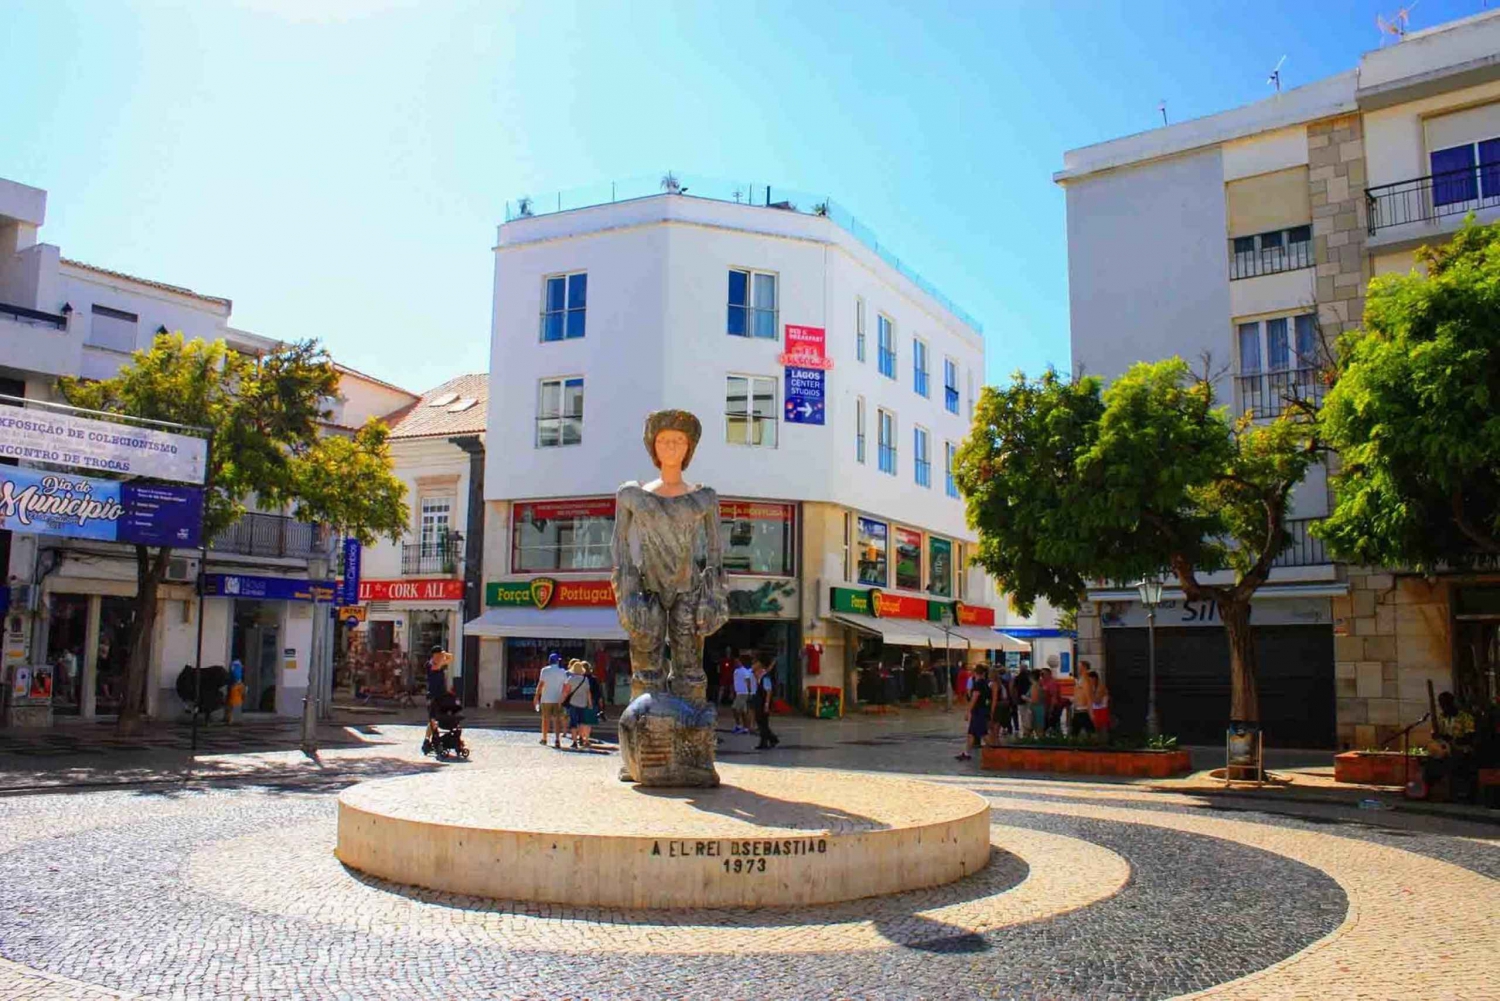 Algarve: Silves, Lagos and Cape St. Vincent